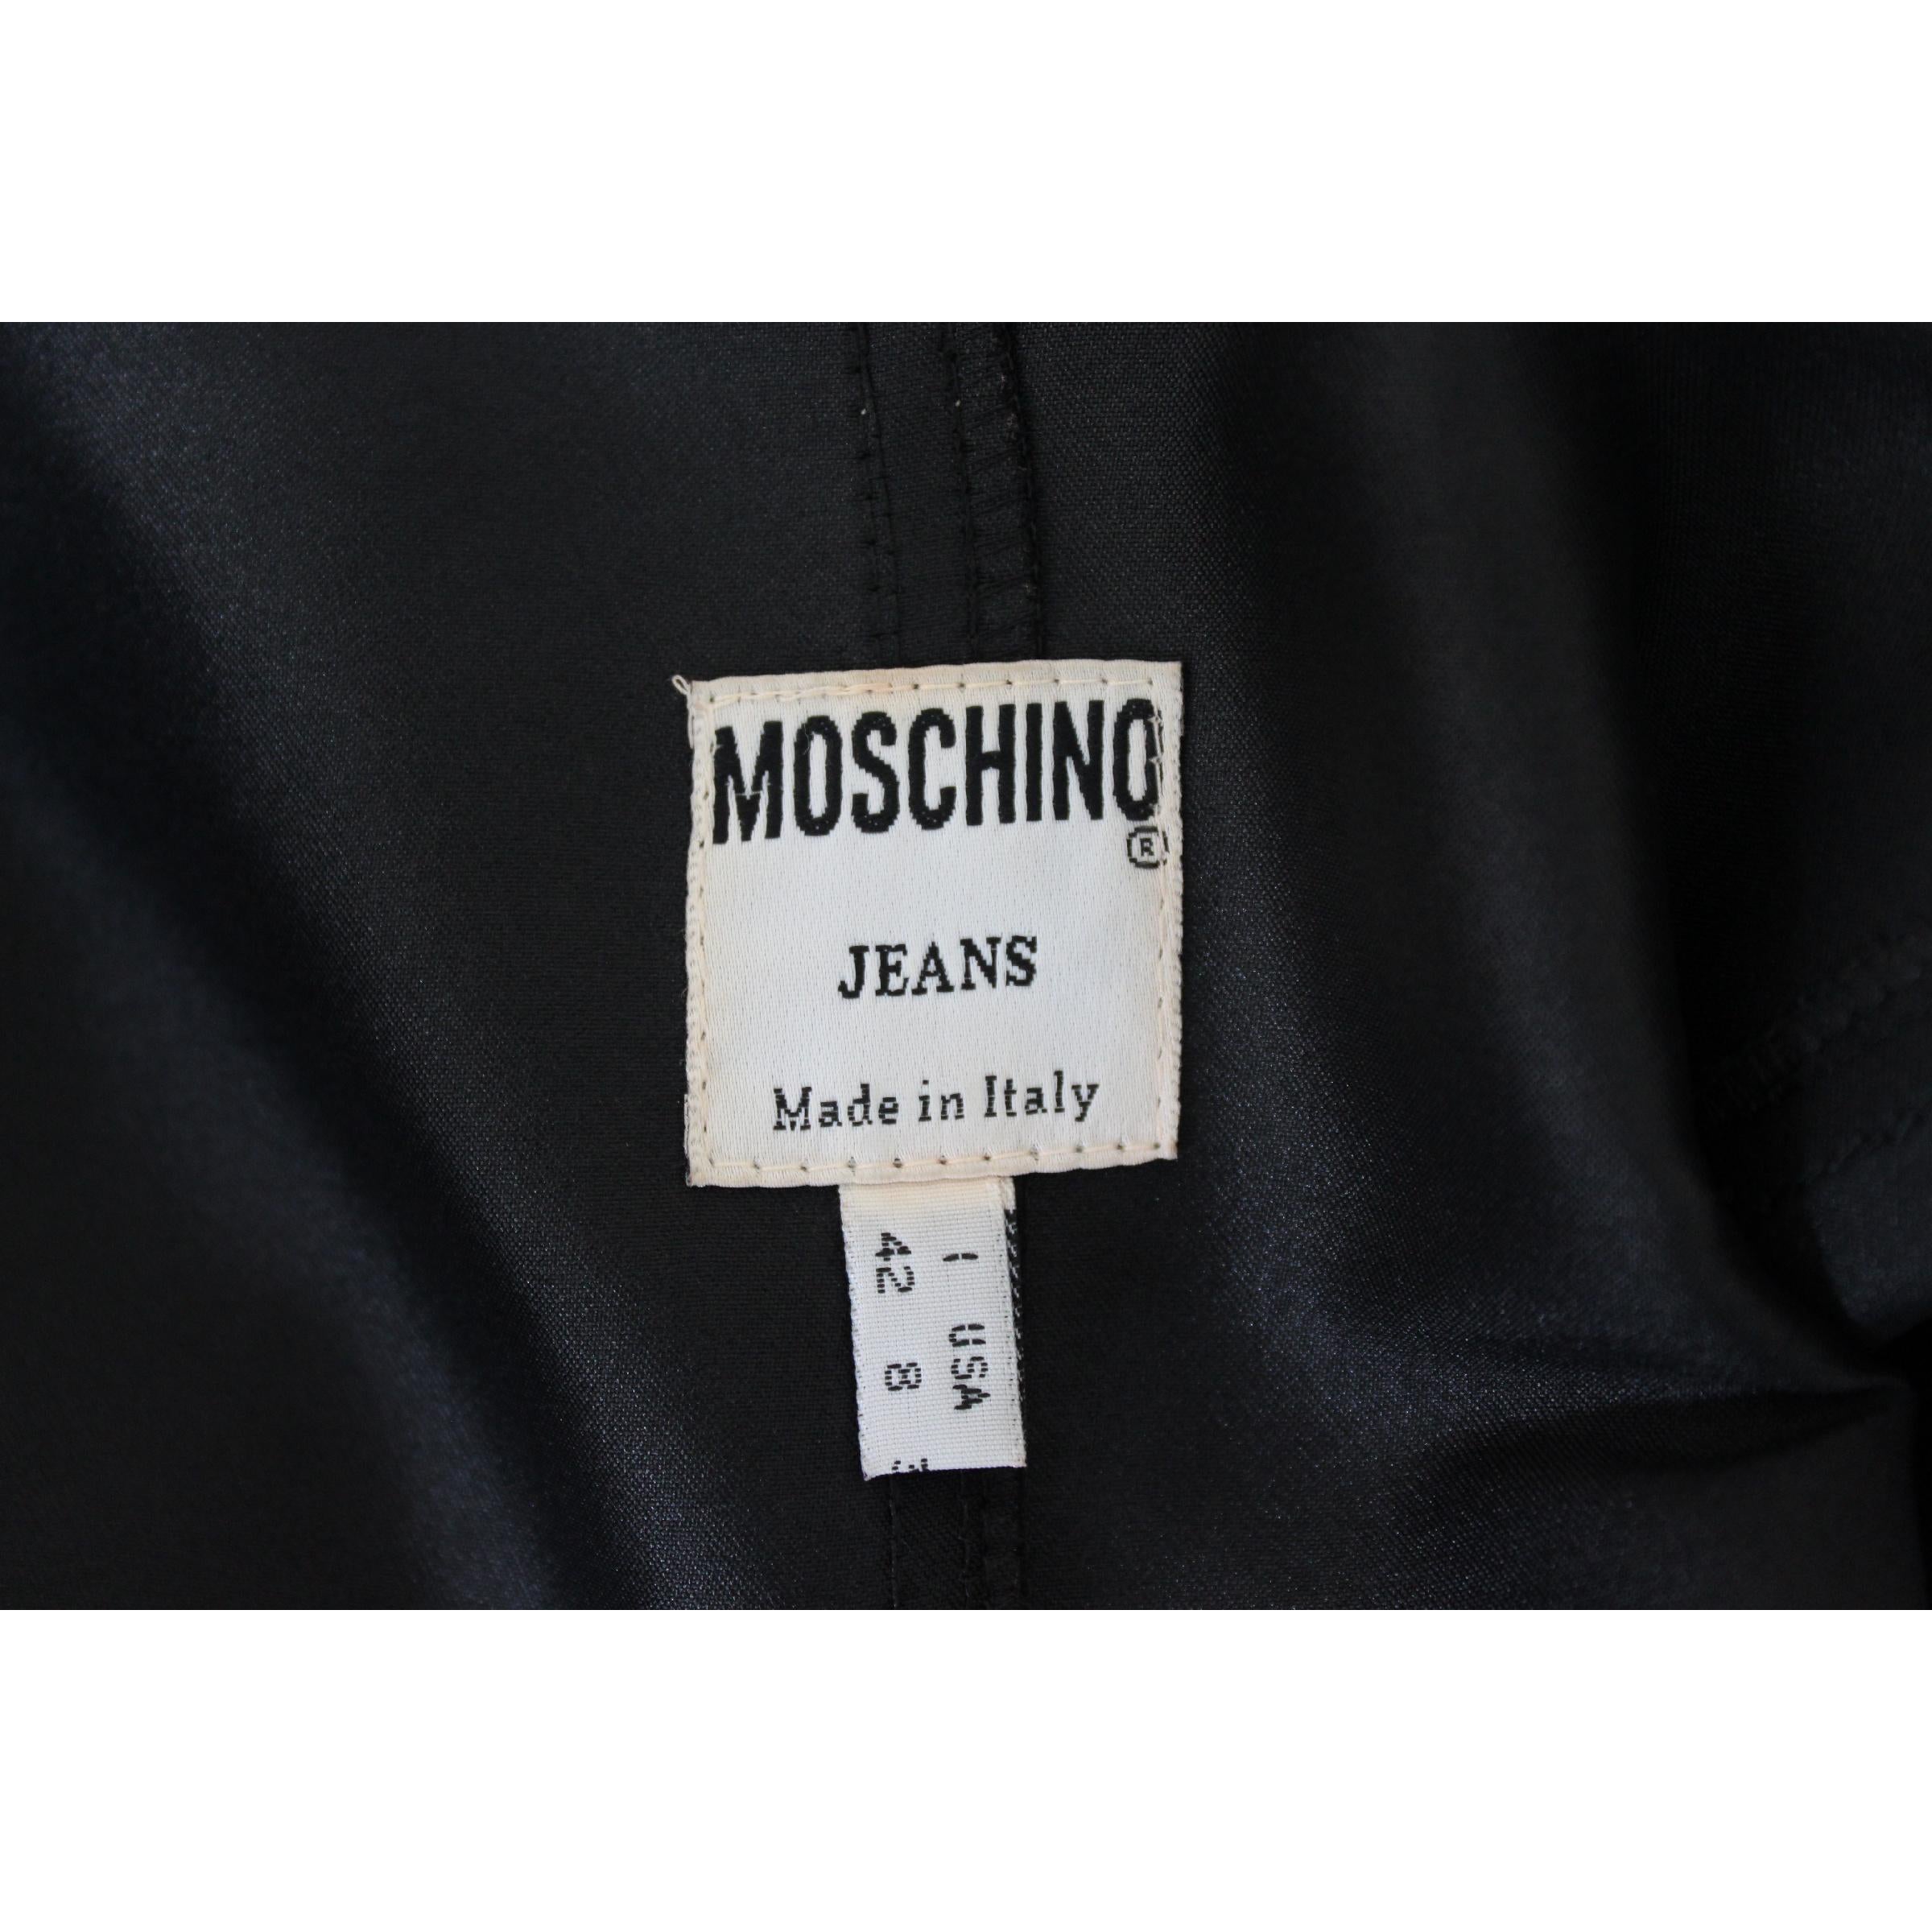 2000s Moschino Jeans Rockabilly Short Sheath Dress Black Sleeveless 2